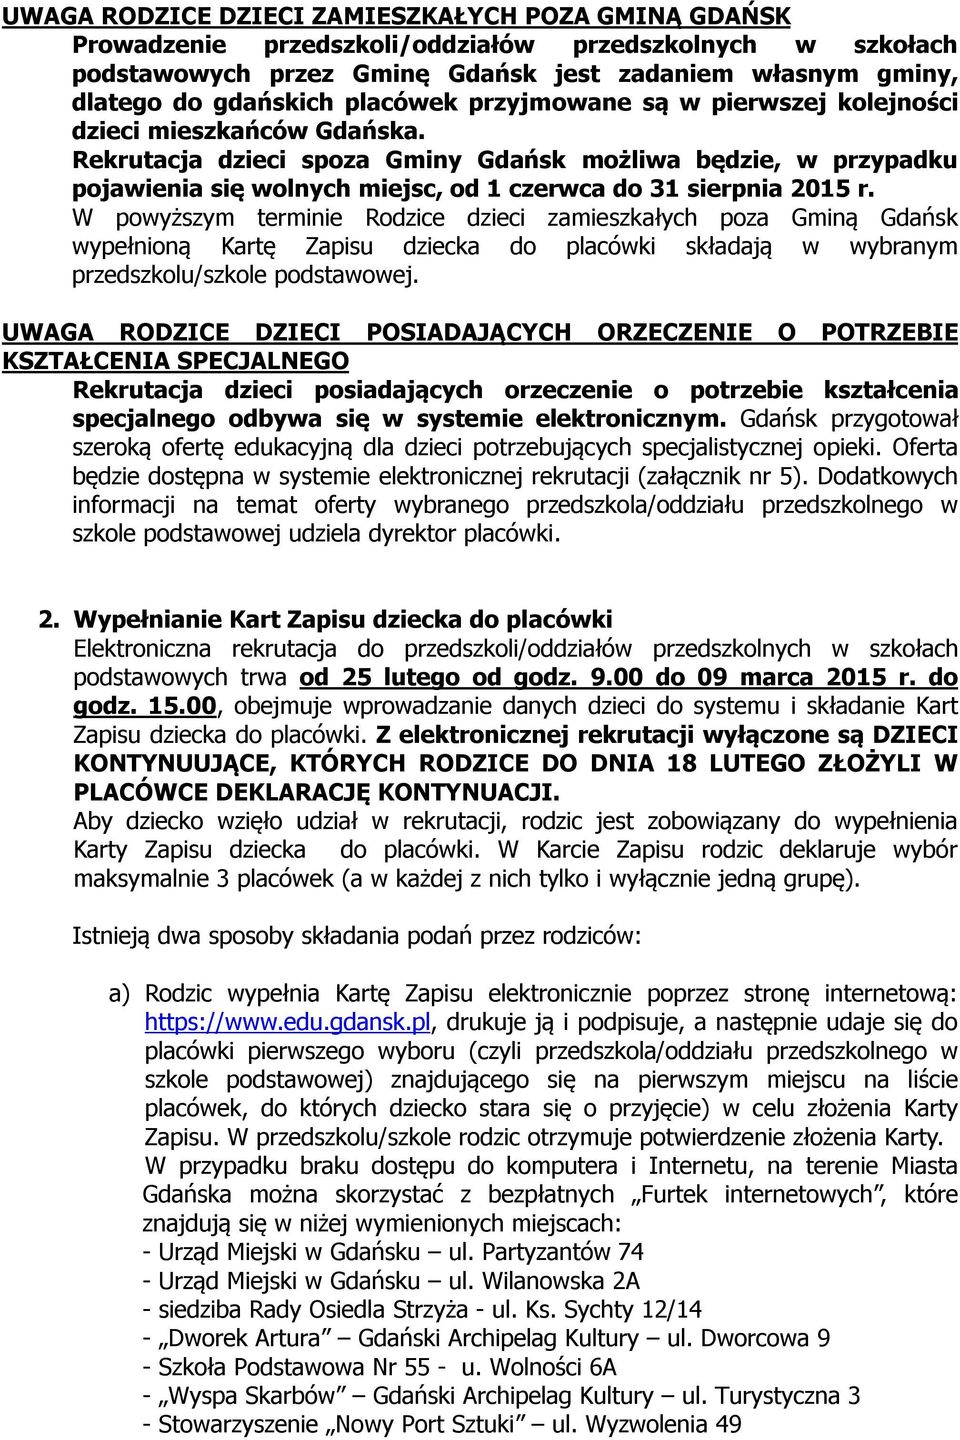 Rekrutacja dzieci spoza Gminy Gdańsk możliwa będzie, w przypadku pojawienia się wolnych miejsc, od 1 czerwca do 31 sierpnia 2015 r.